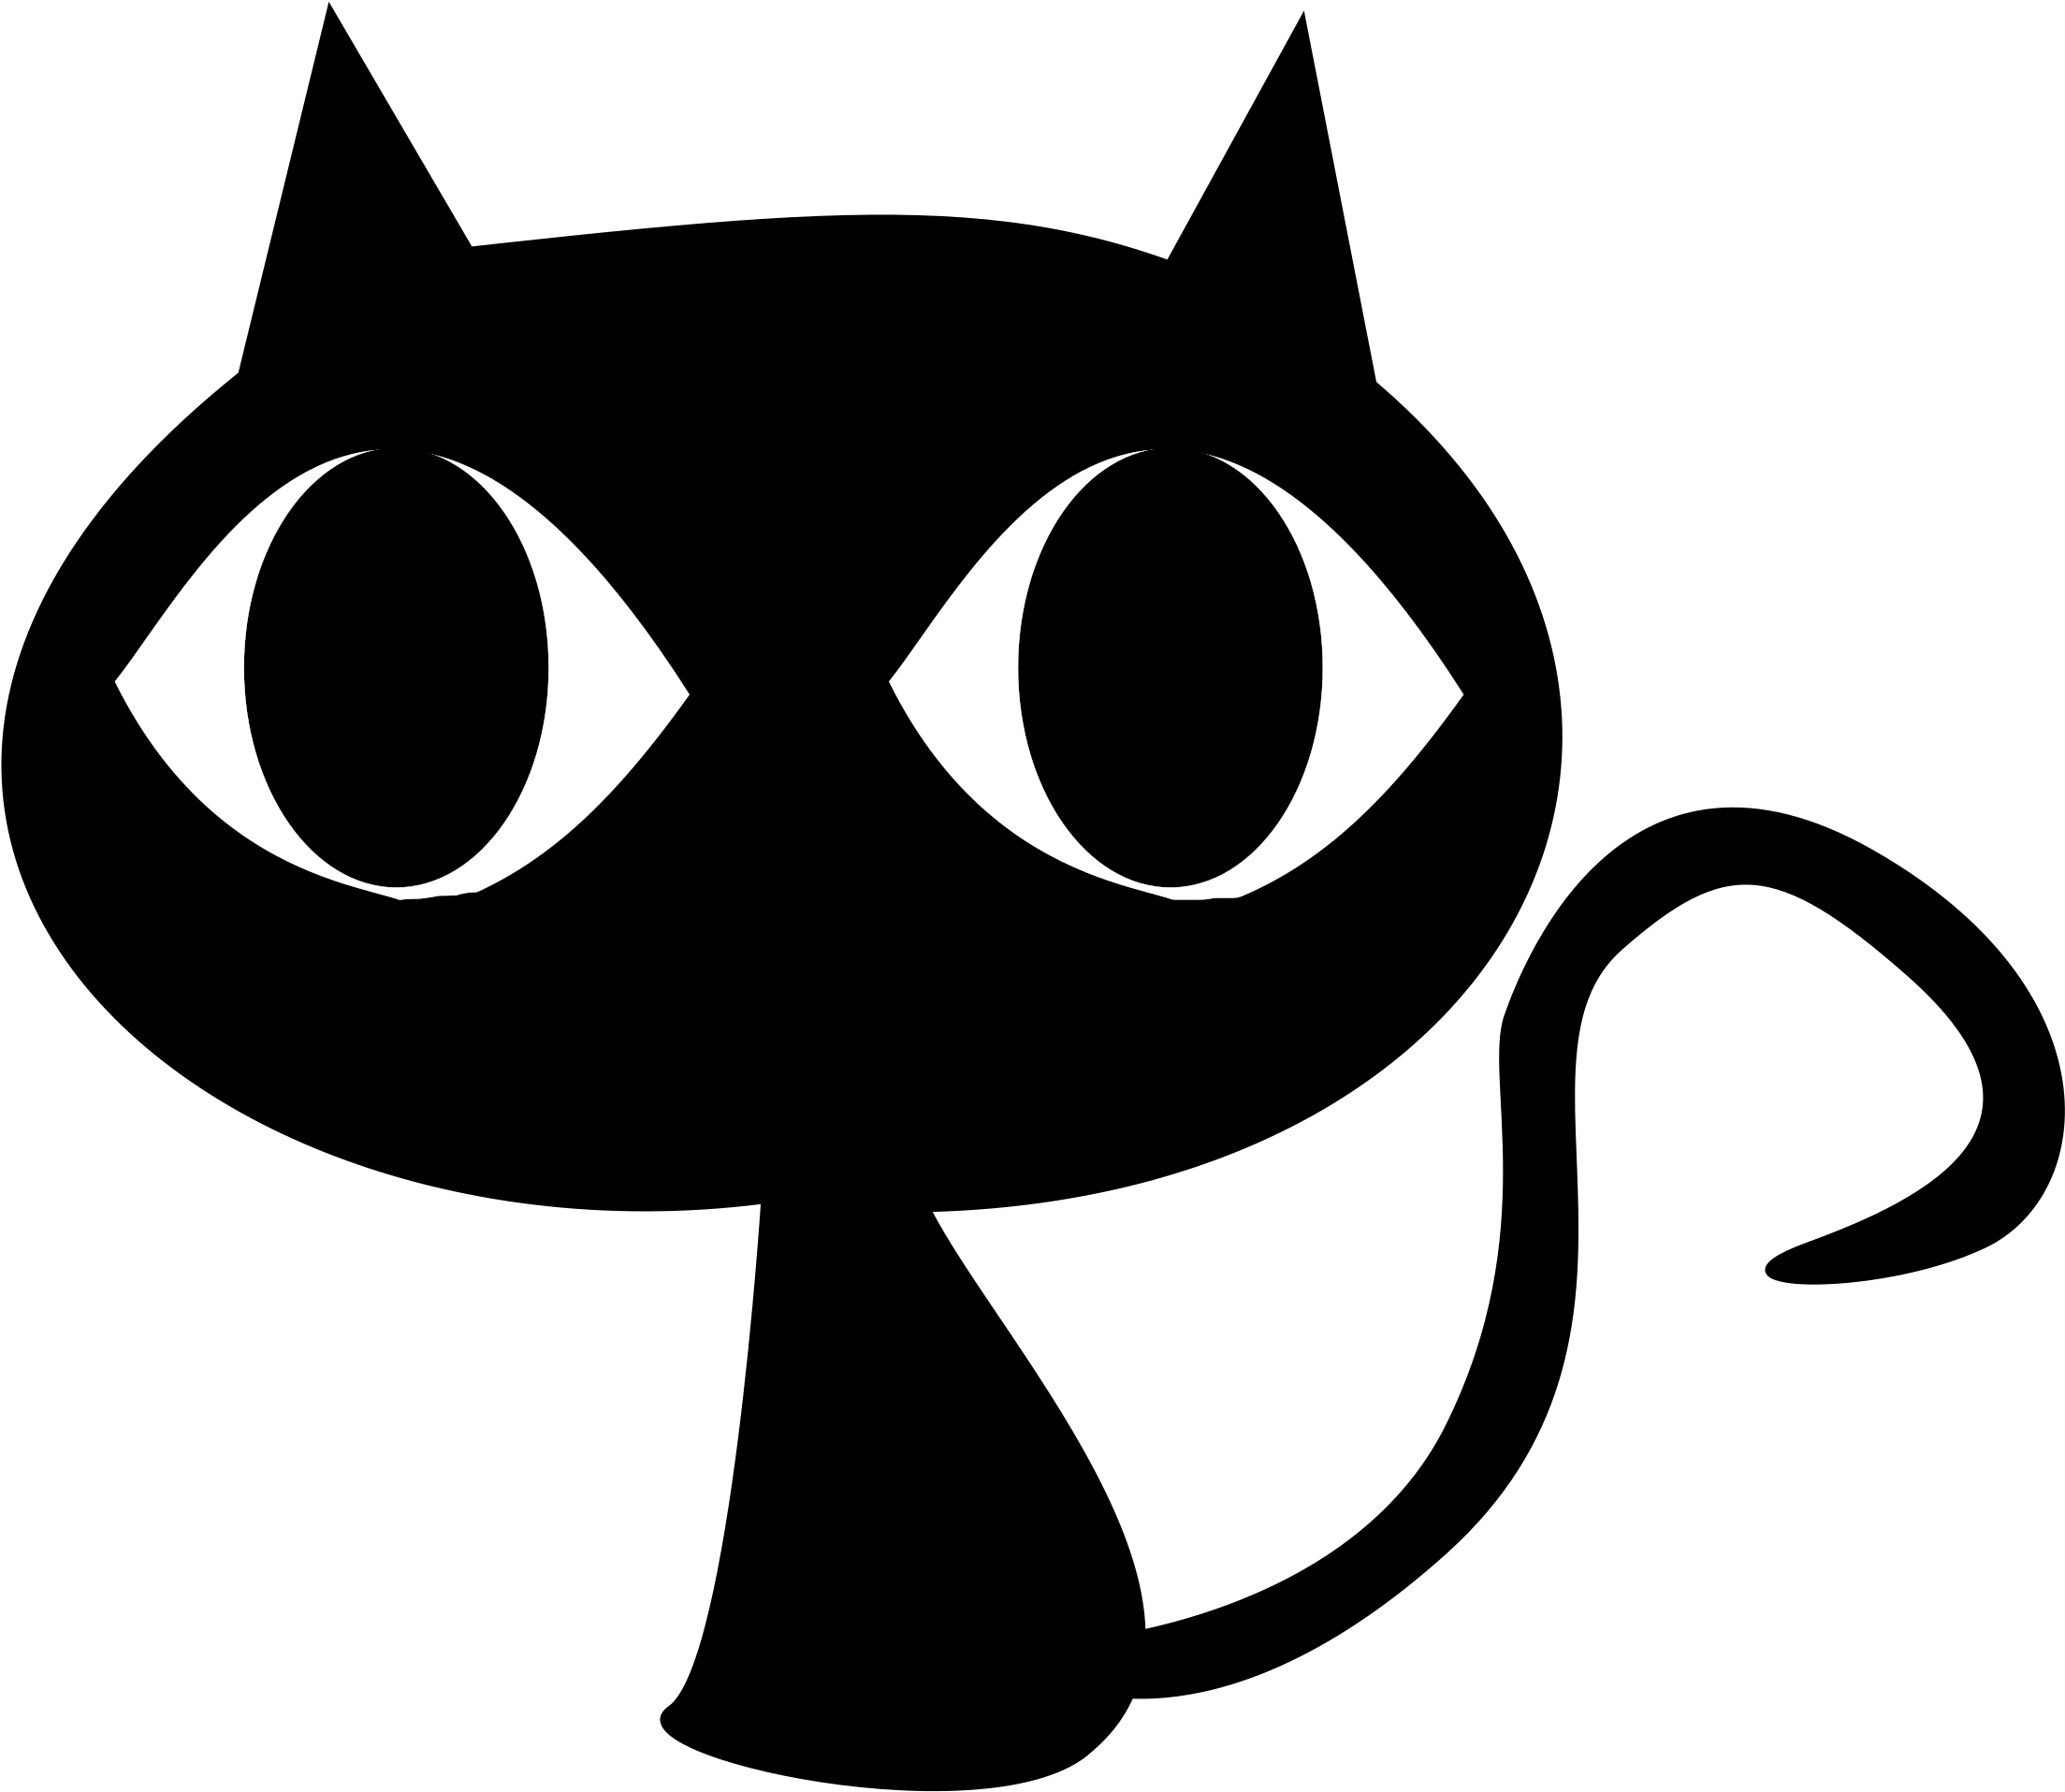 Black Cat Png Transparent - Cute Black Cat Vector Clipart (2400x2400), Png Download